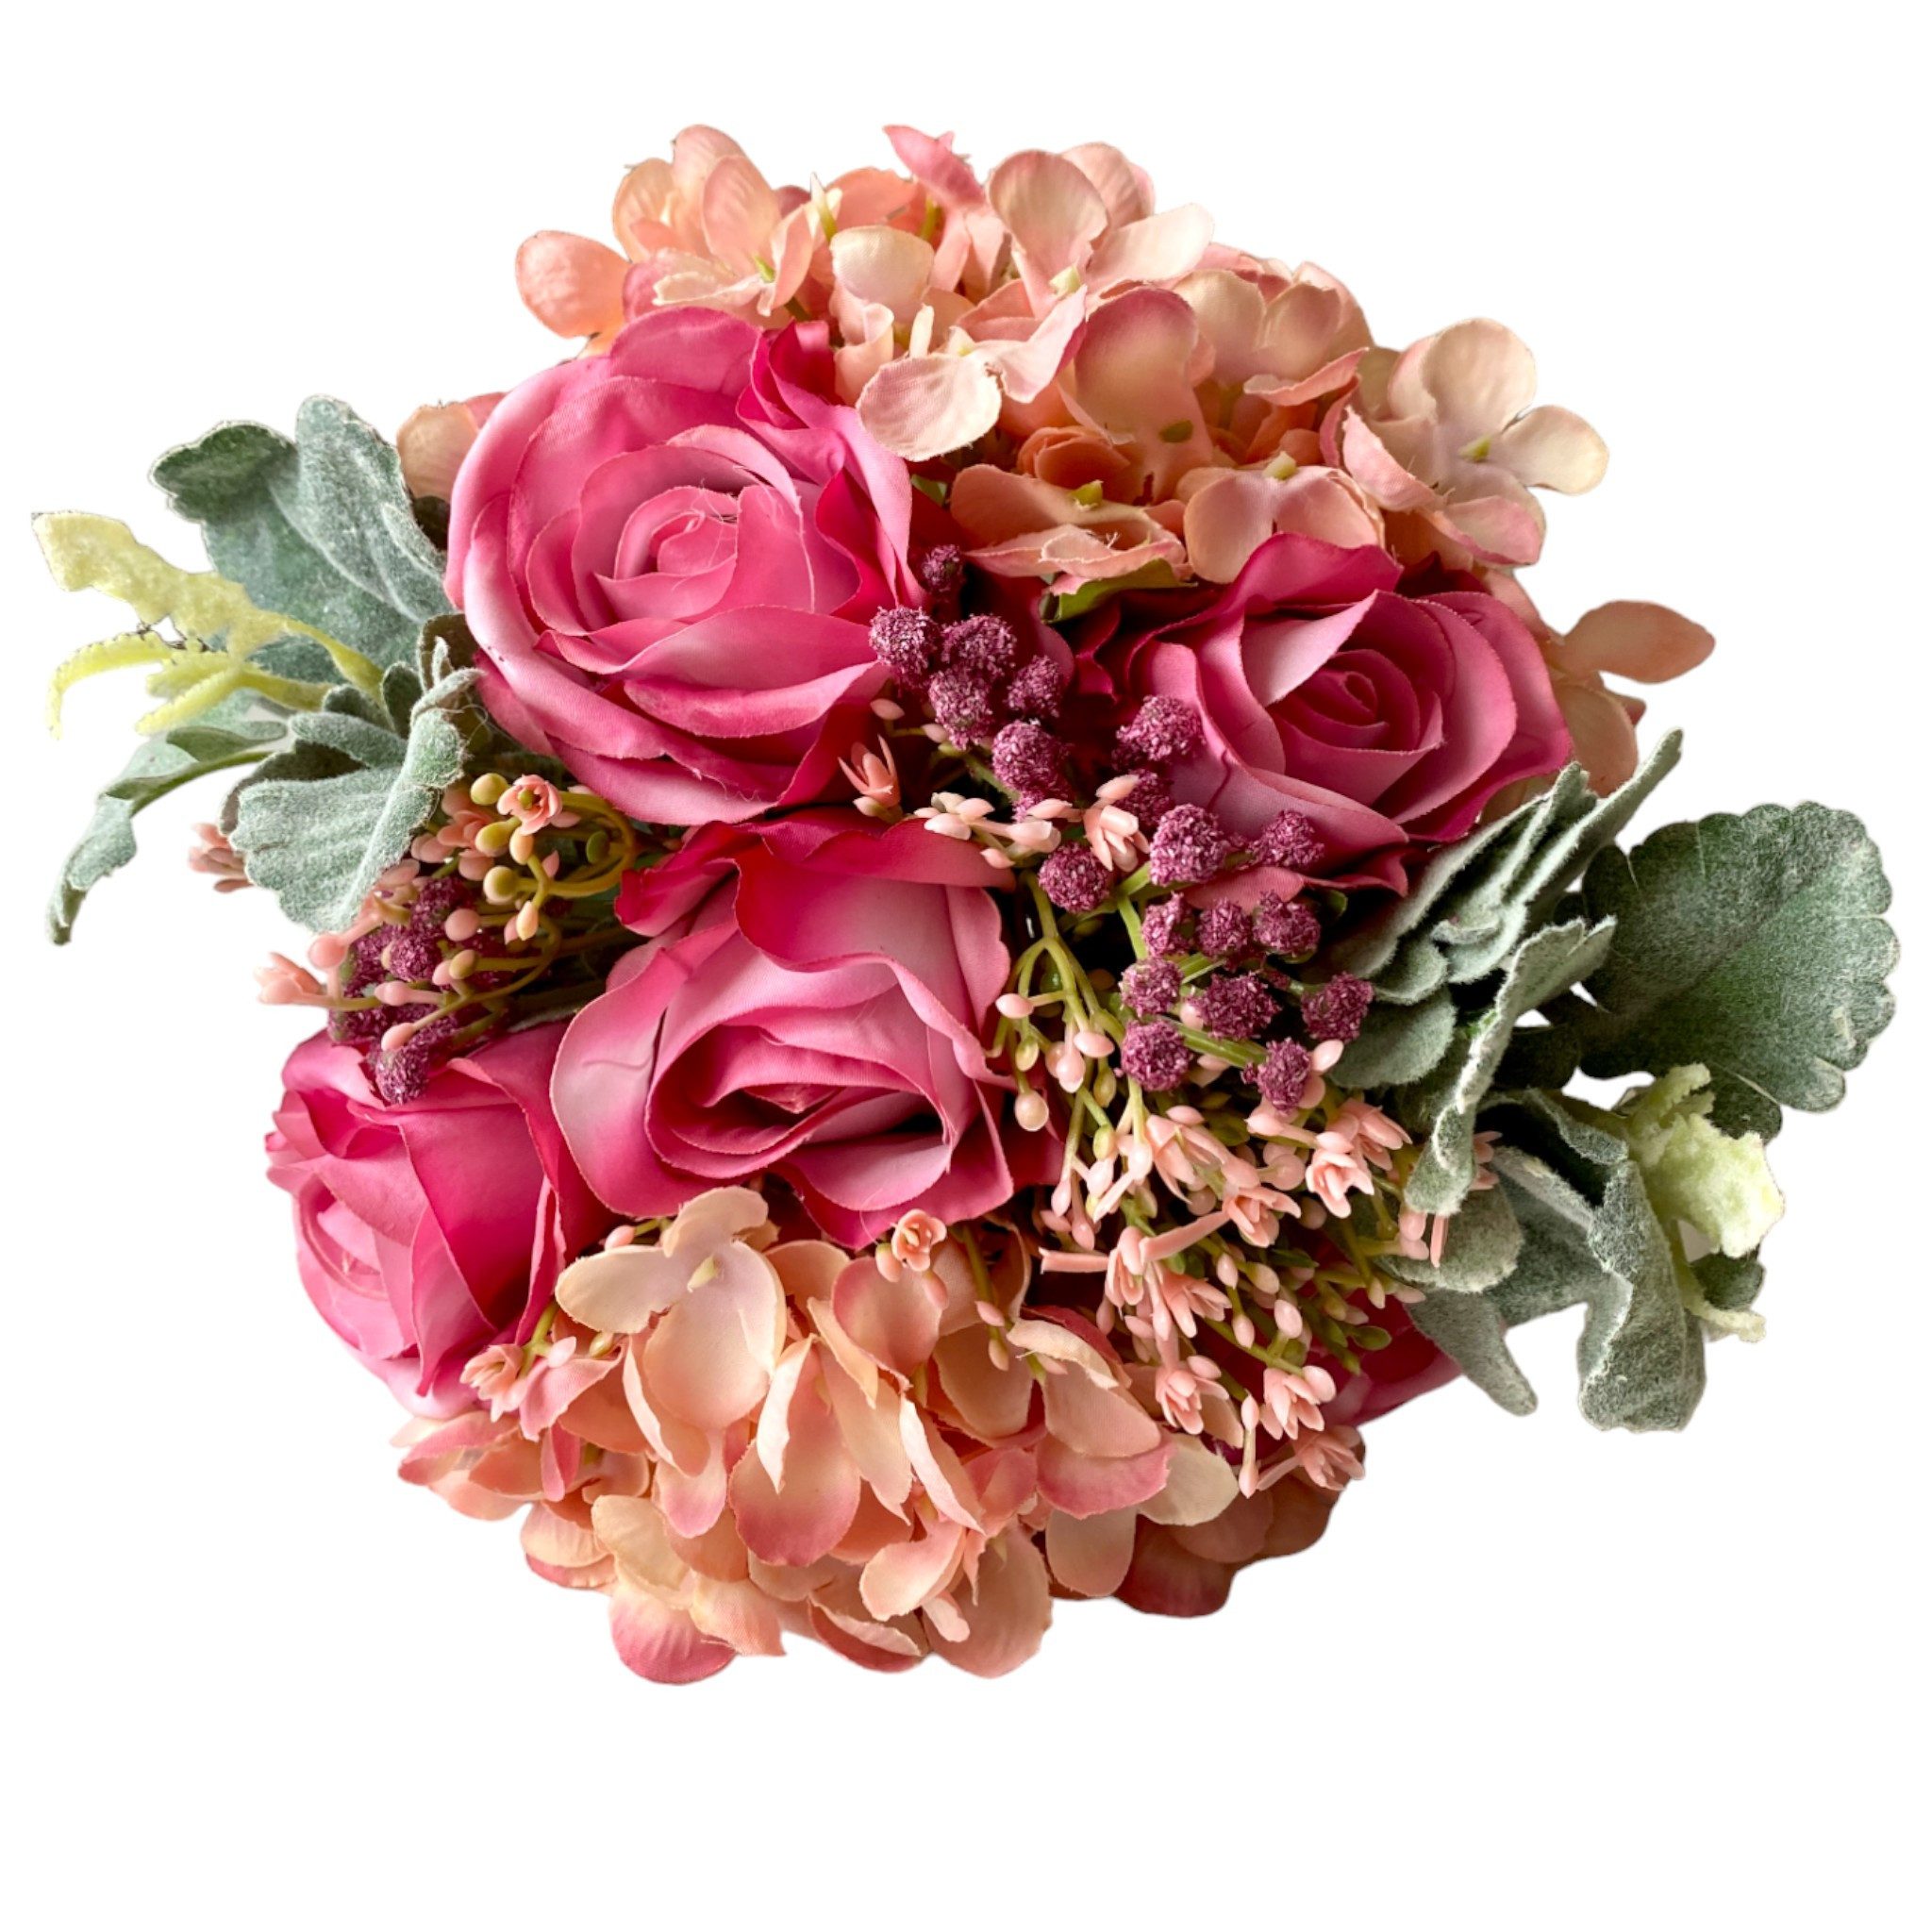 Gestecke Blumenstrauß Strauß Bouquet Rosen Hortensien Rosa Malve 28cm, Florissima